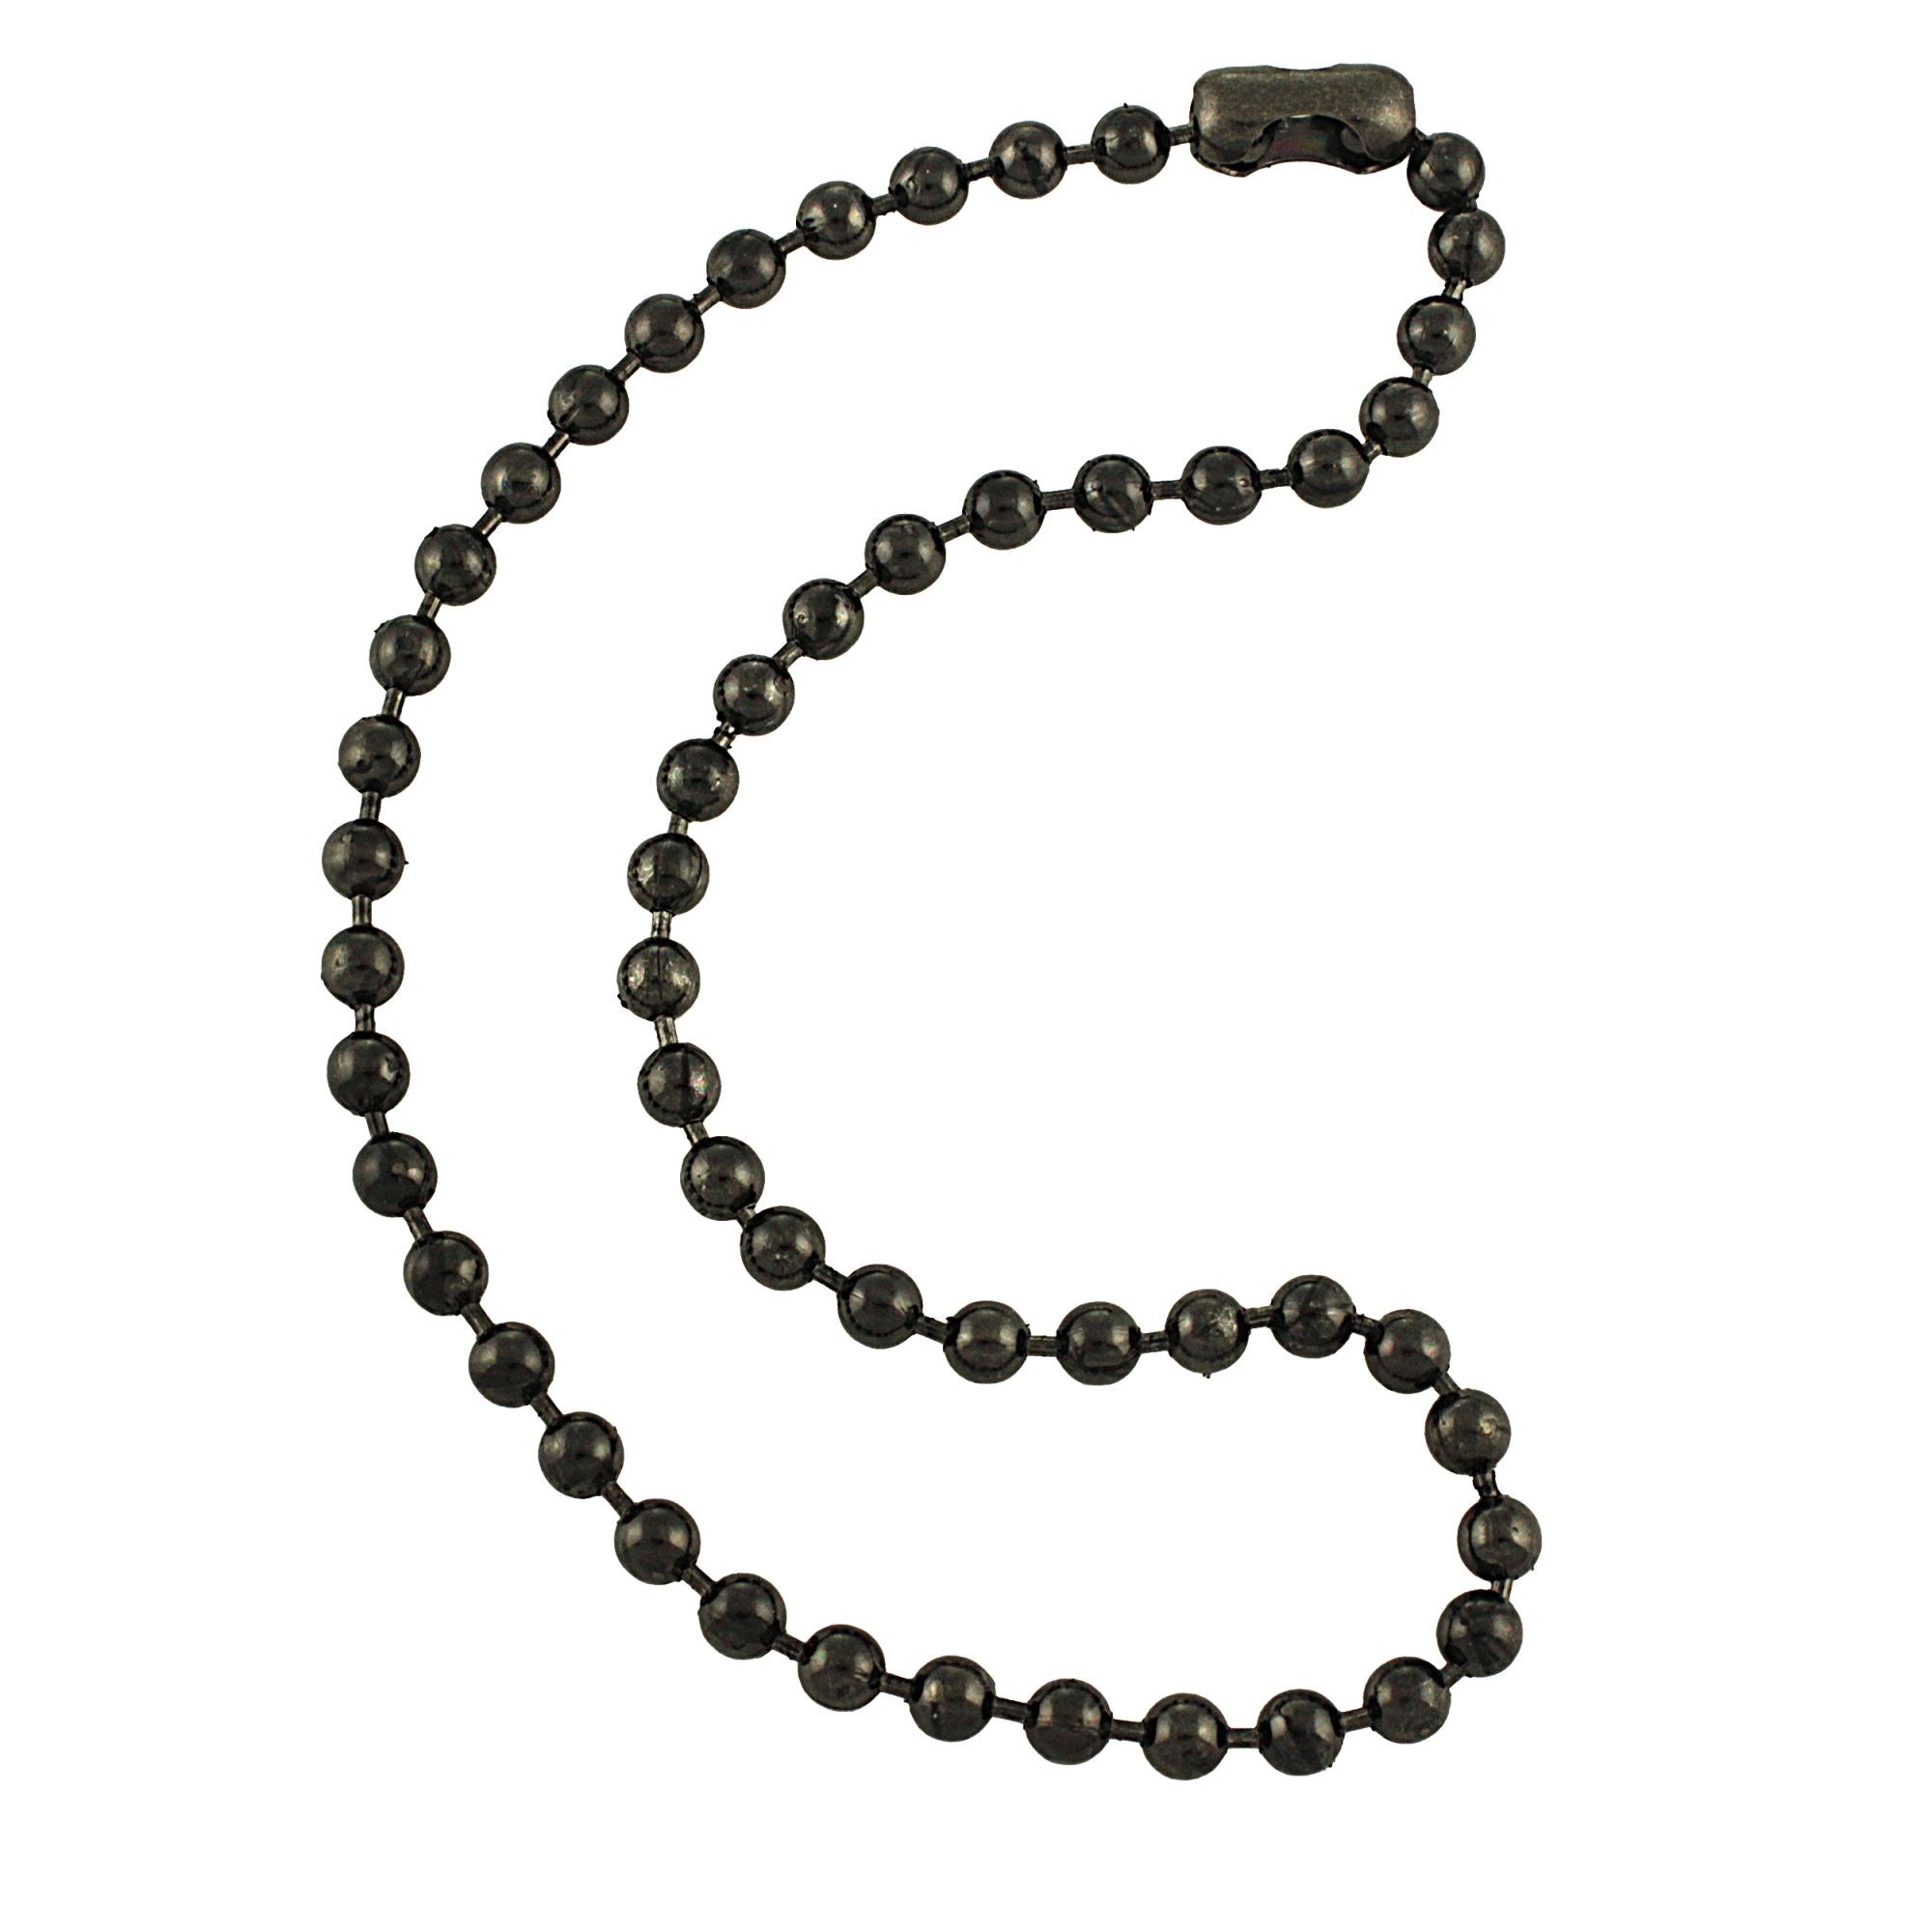 Black Pearl Necklace Men | Pearl Necklace Men Fashion | Pearl Necklace  Choker Mens - Necklace - Aliexpress